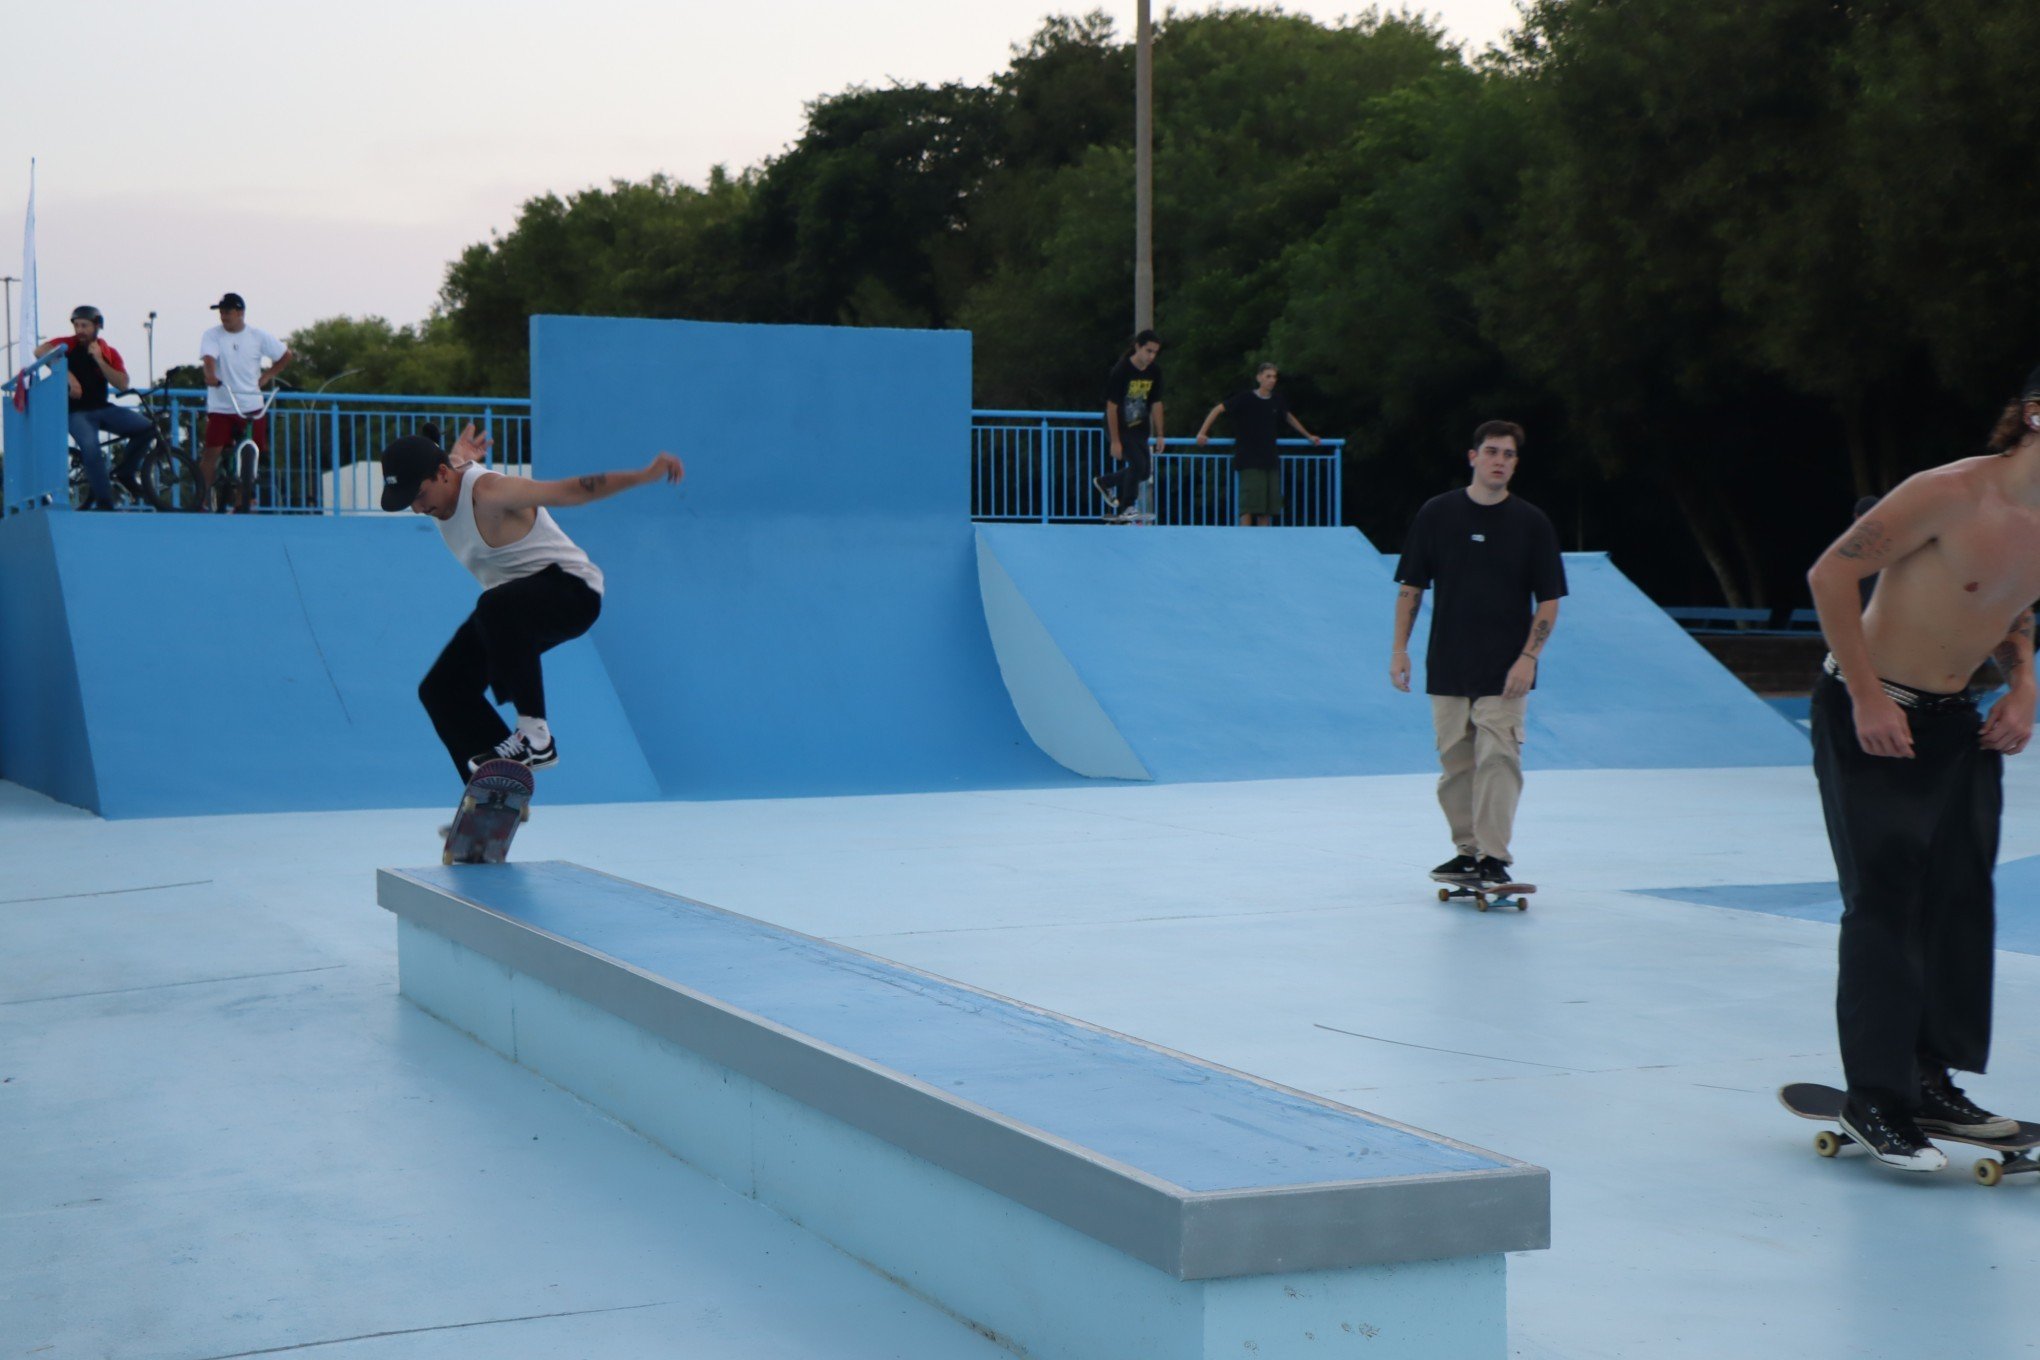 Campo Bom celebra reinauguração Pista de Skate: "Um presente para a comunidade"